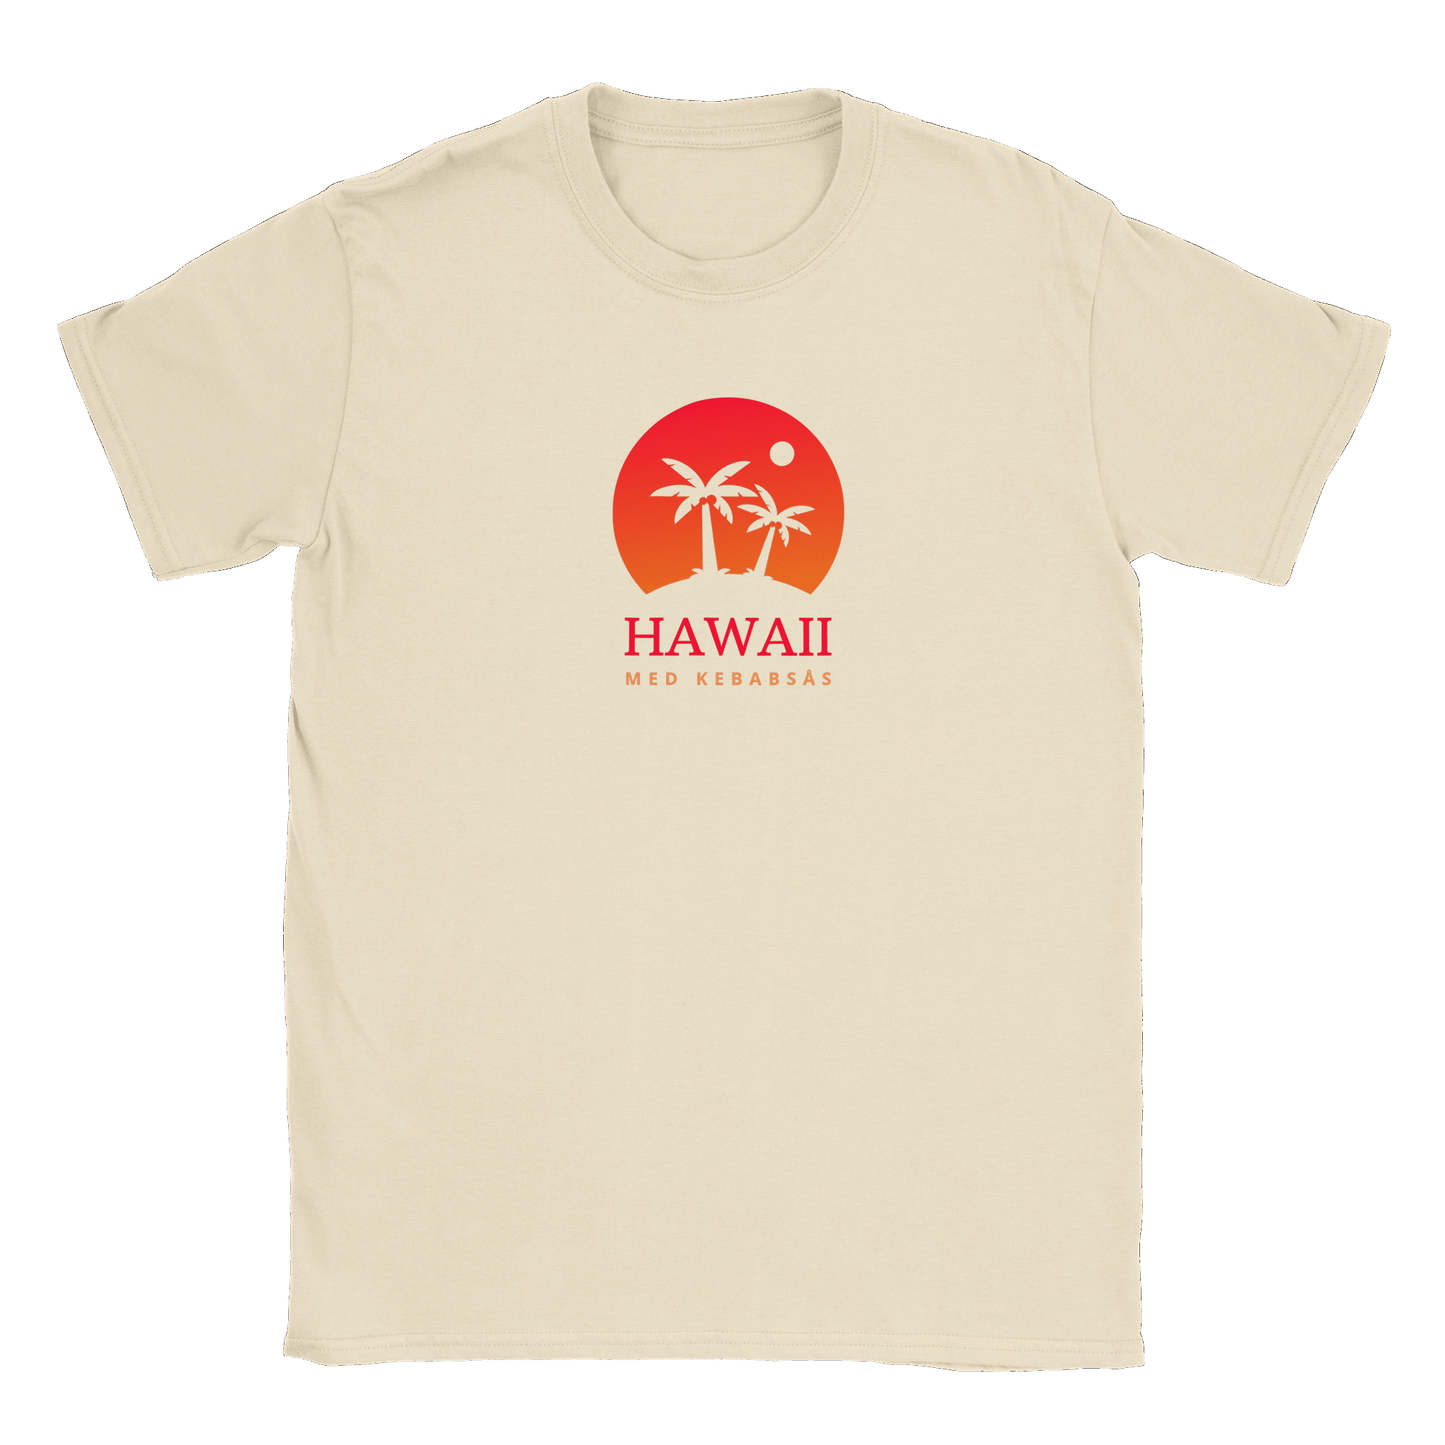 Hawaii med kebabsås - T-shirt Natural